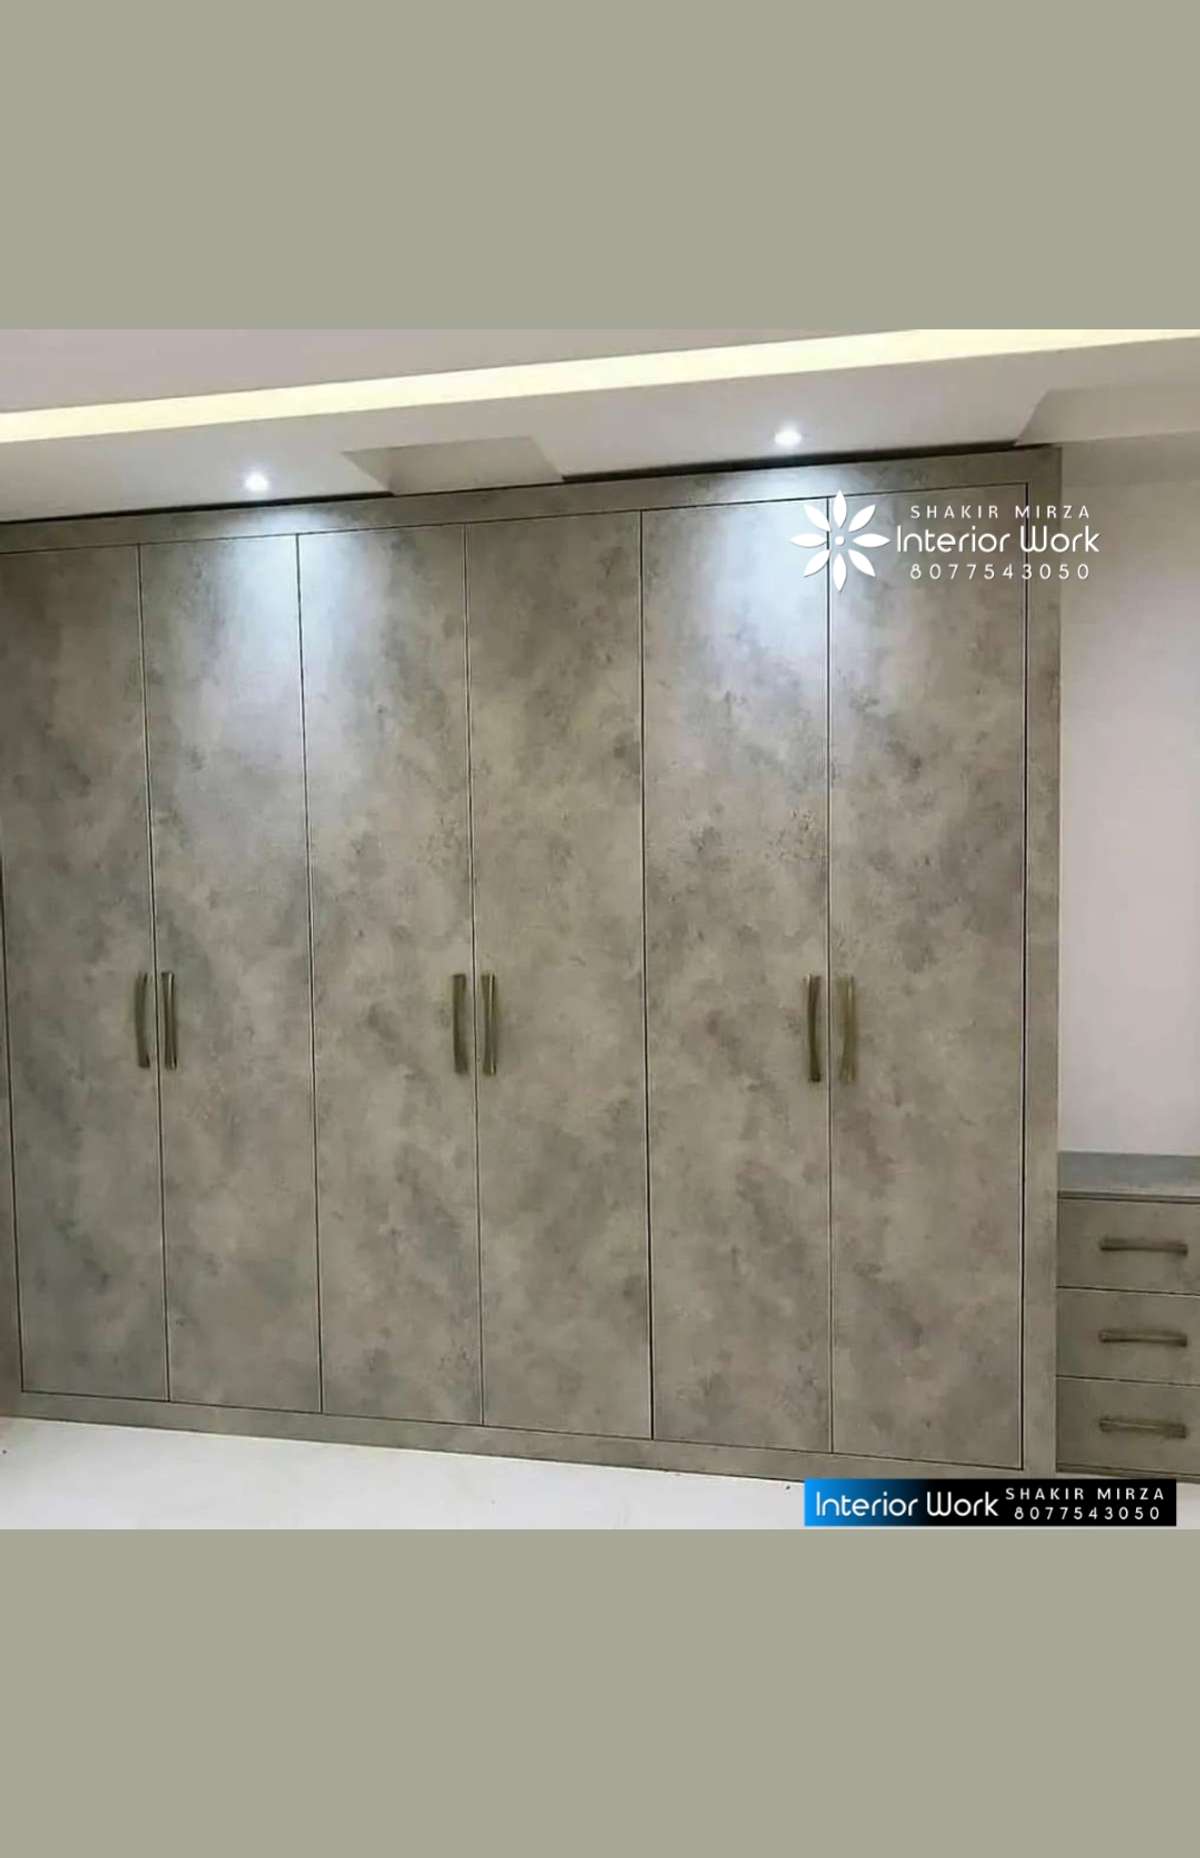 Designs by Carpenter interior work Shakir mirza, Delhi | Kolo